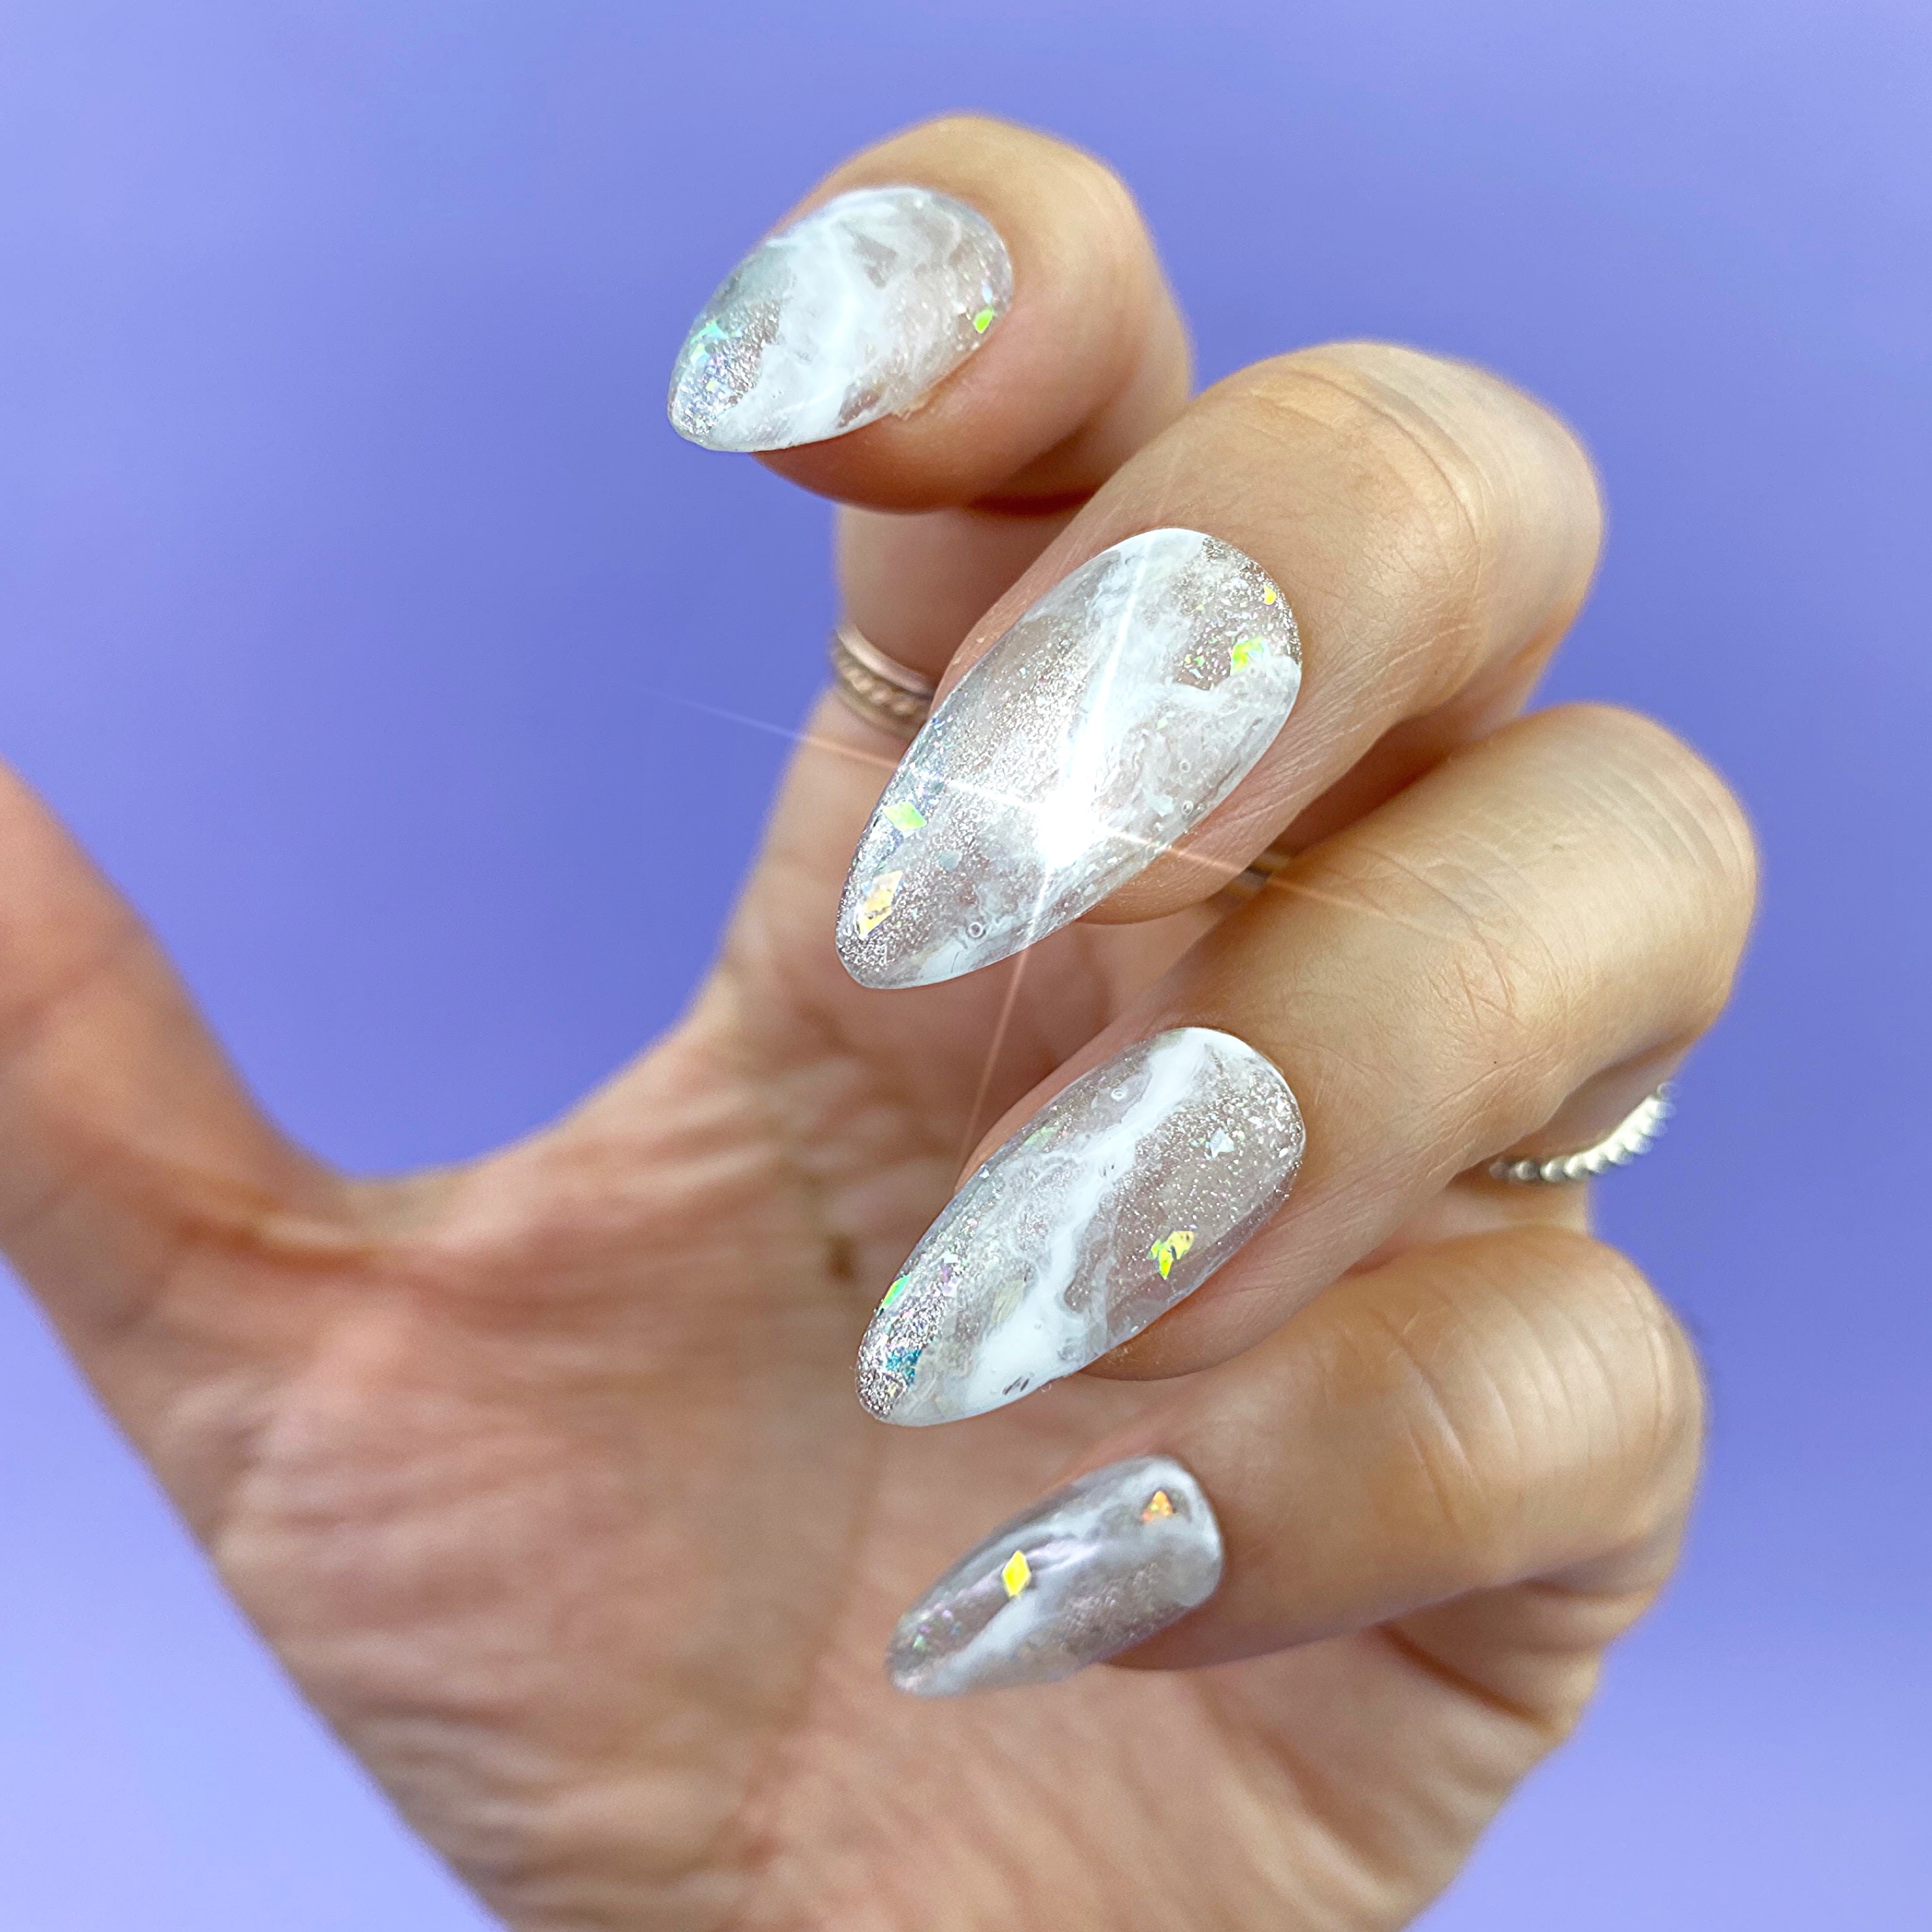 Handmade- OG Unicorn White Glitter Chrome Bling Crystal Press On Nail